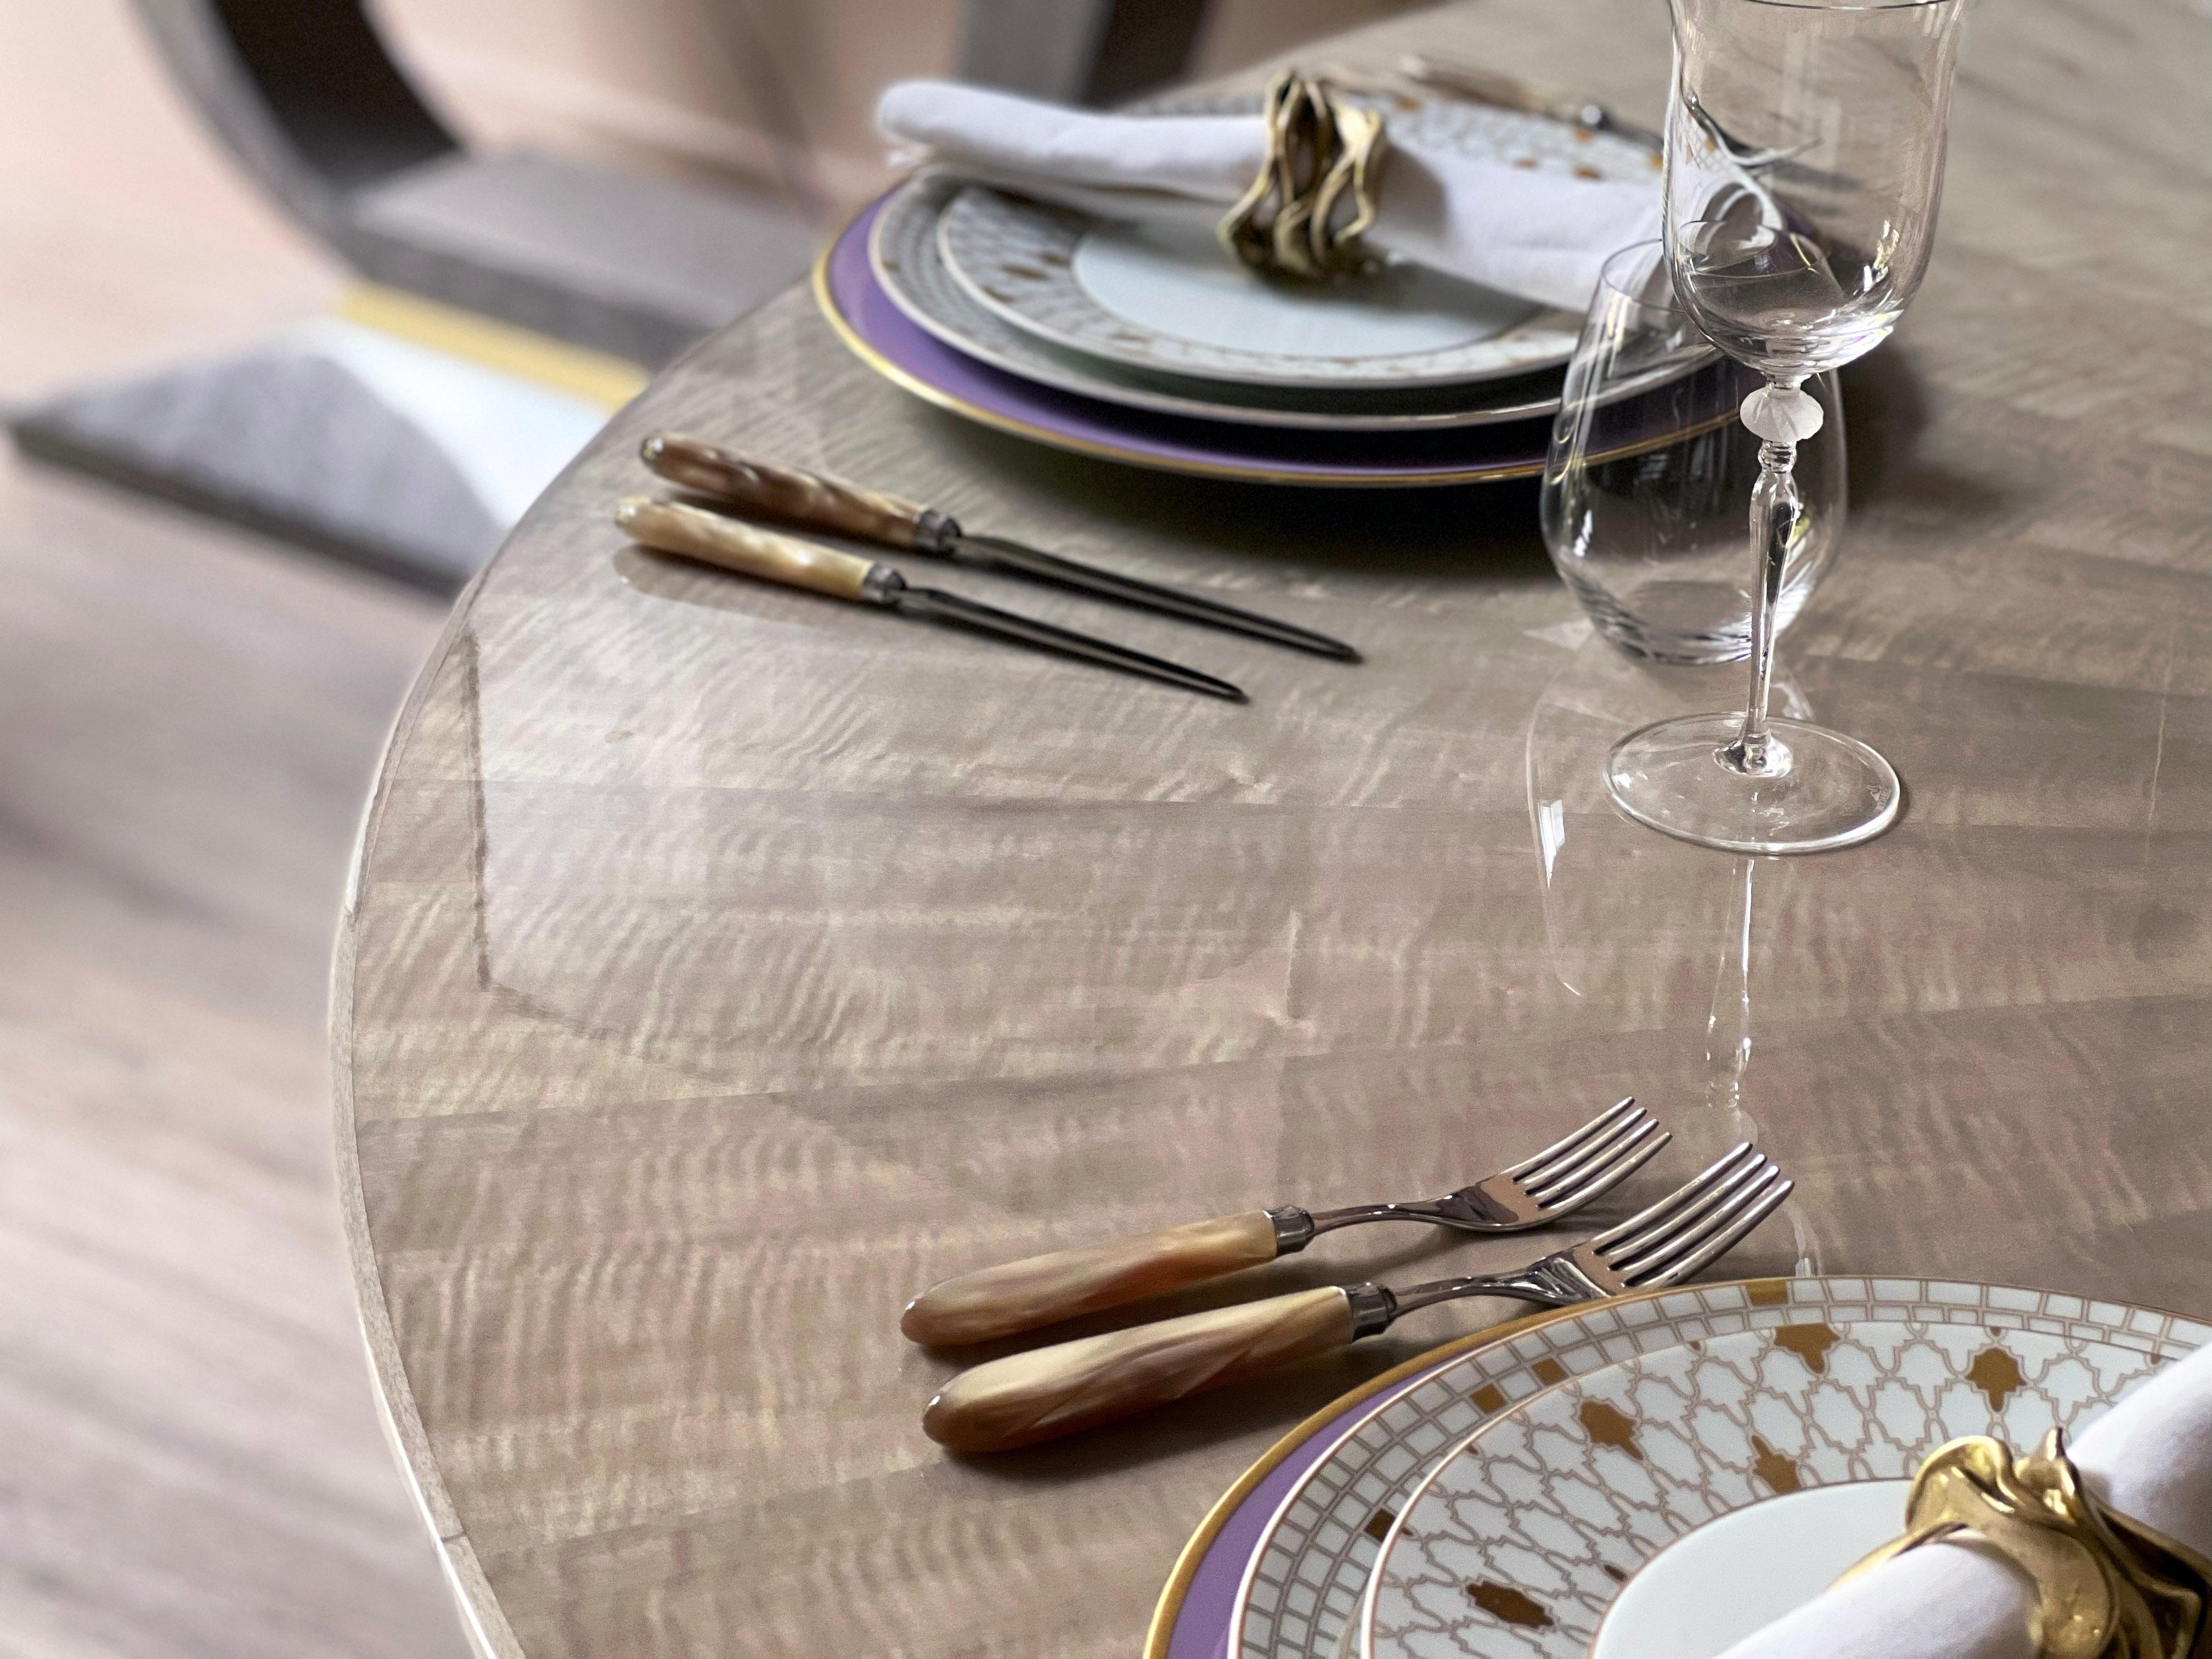 Der Elystan Dining Table von Davidson London ist ein Esstisch, der modernen Luxus und Funktionalität in sich vereint. 

Der Elystan kombiniert das glänzende Anegre-Holz in Shadow Grey mit einem strapazierfähigen und kratzfesten Hochglanzlack, damit